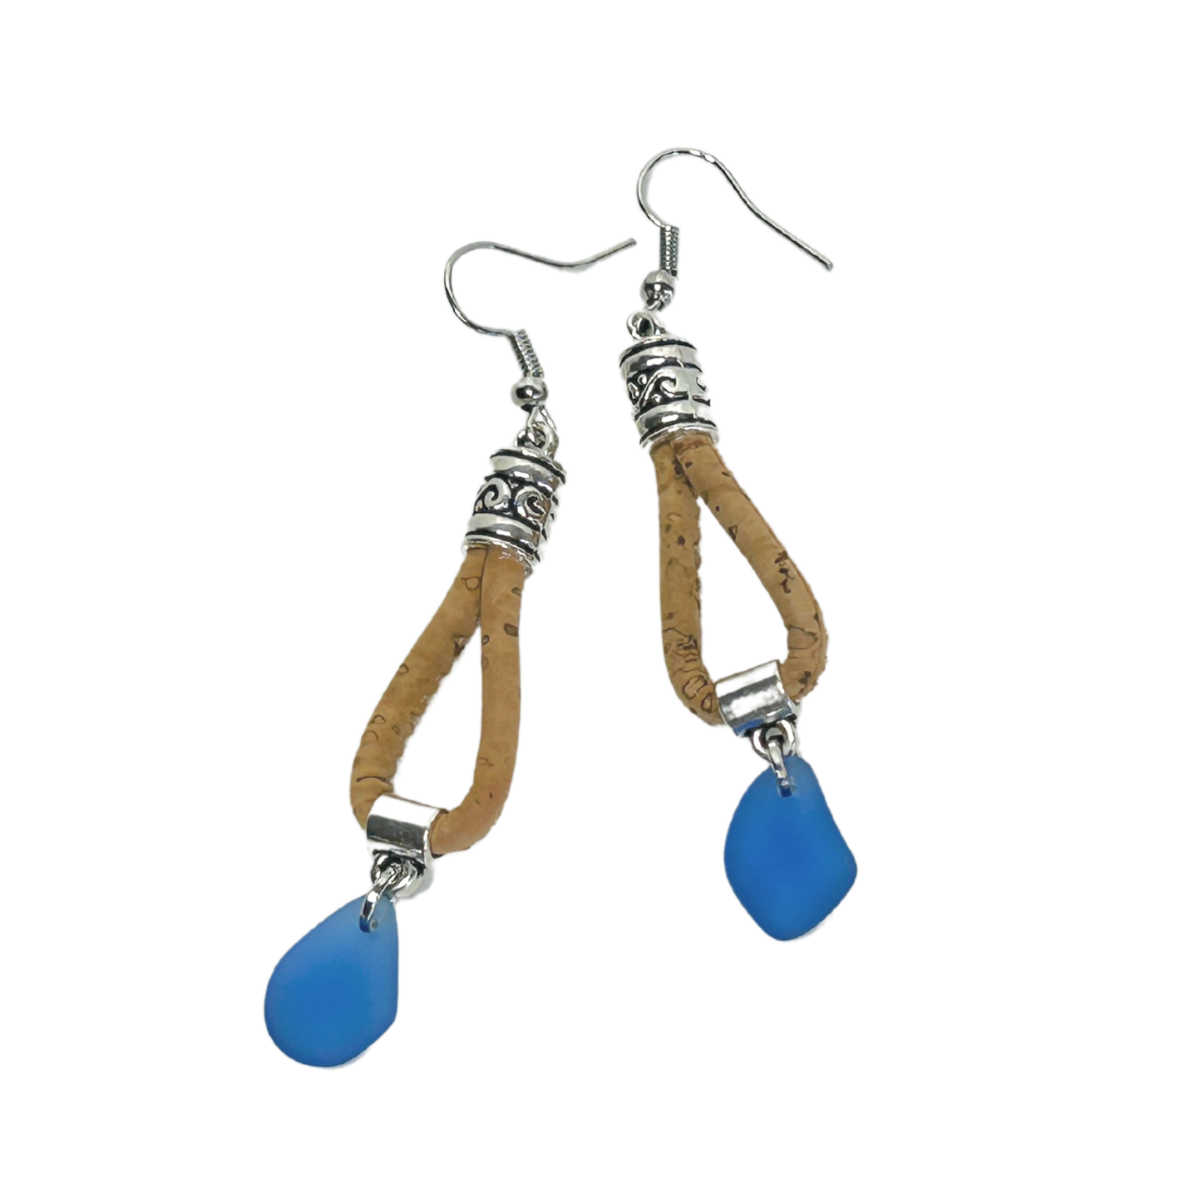 Sea glass cork drop earrings